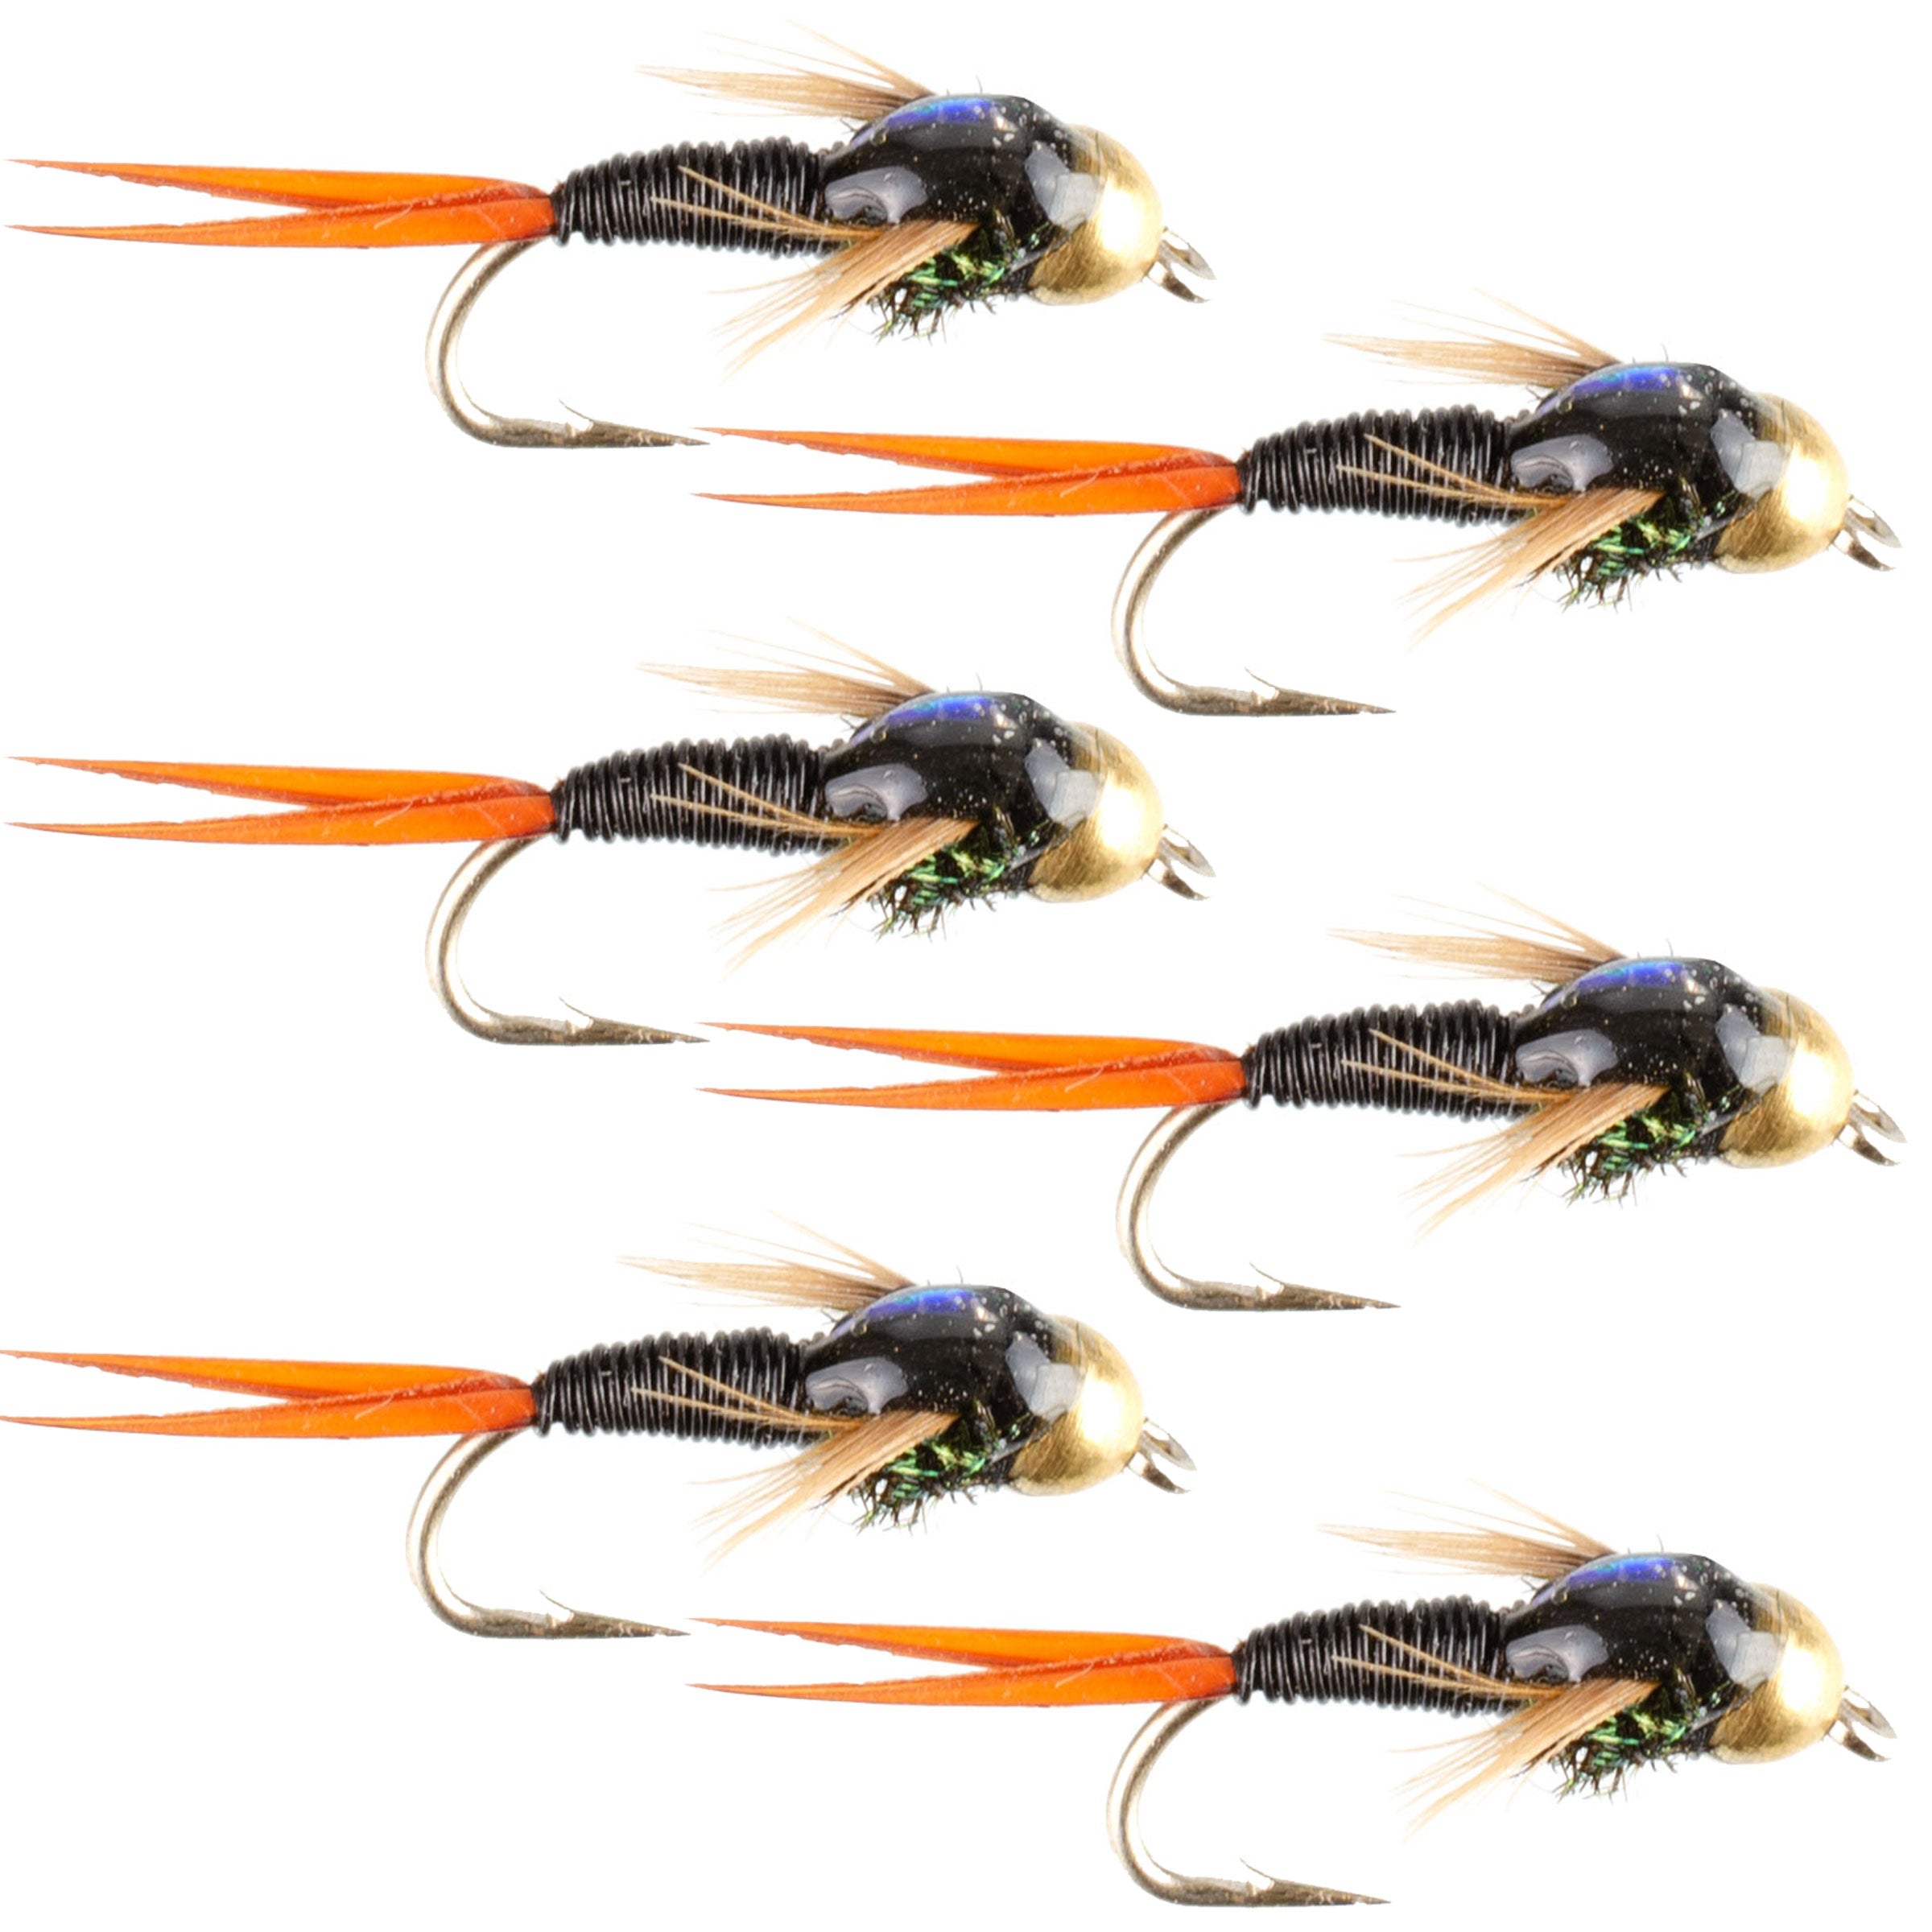 Bead Head Black Copper John Nymph Fly Fishing Flies - Set of 6 Flies Hook Size 14